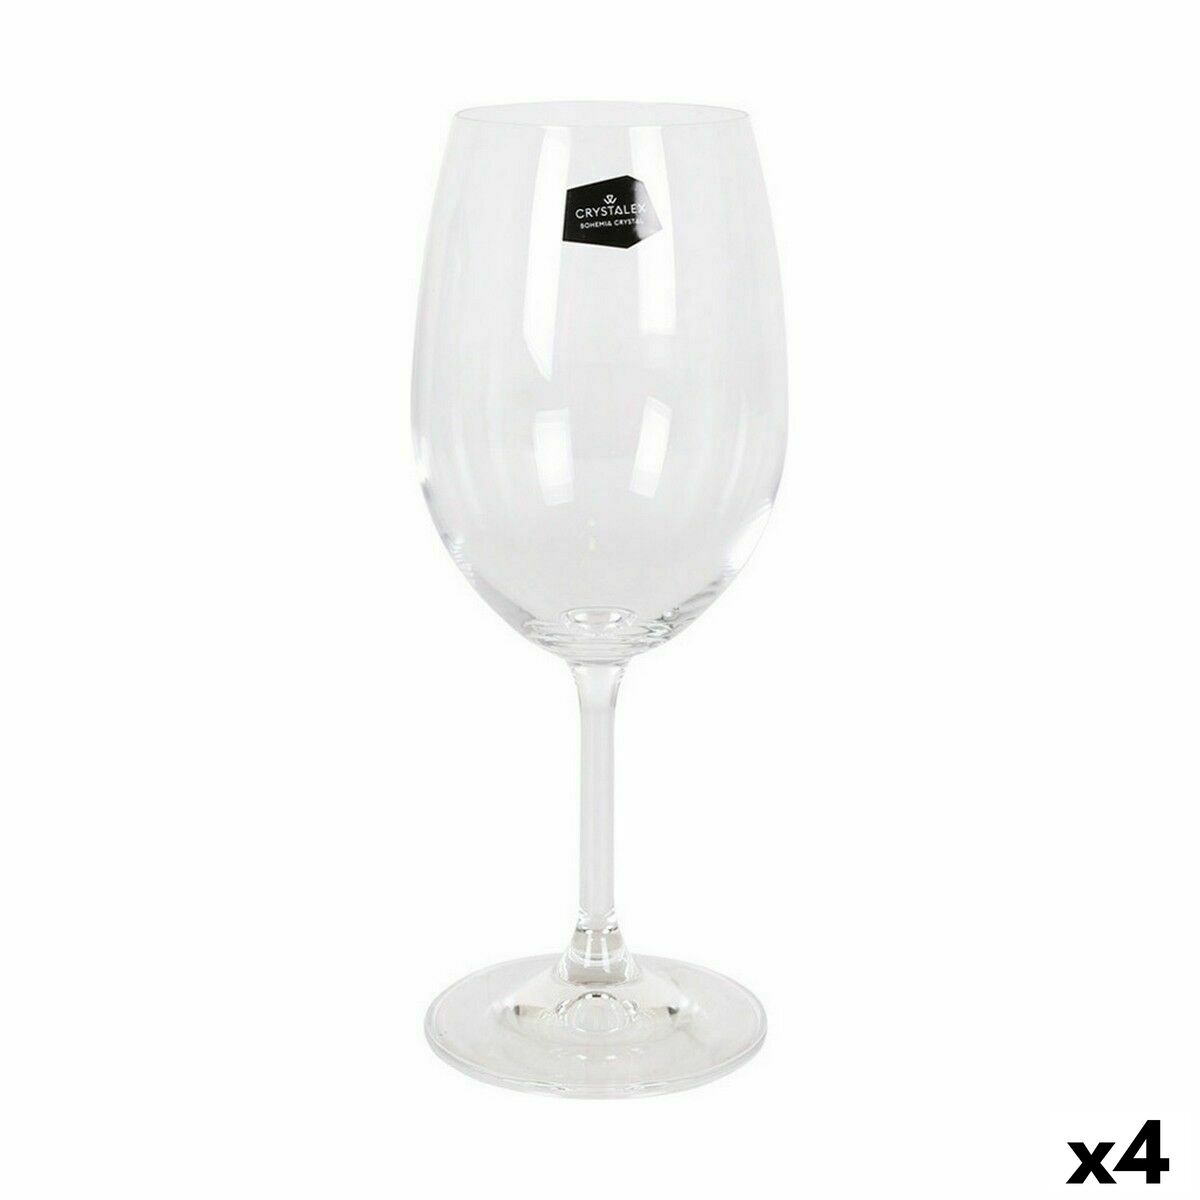 Osta tuote Setti laseja Crystalex Lara Viini 350 ml Kristalli (6 osaa) (4 osaa) verkkokaupastamme Korhone: Gourmet & Keittiö 10% alennuksella koodilla KORHONE